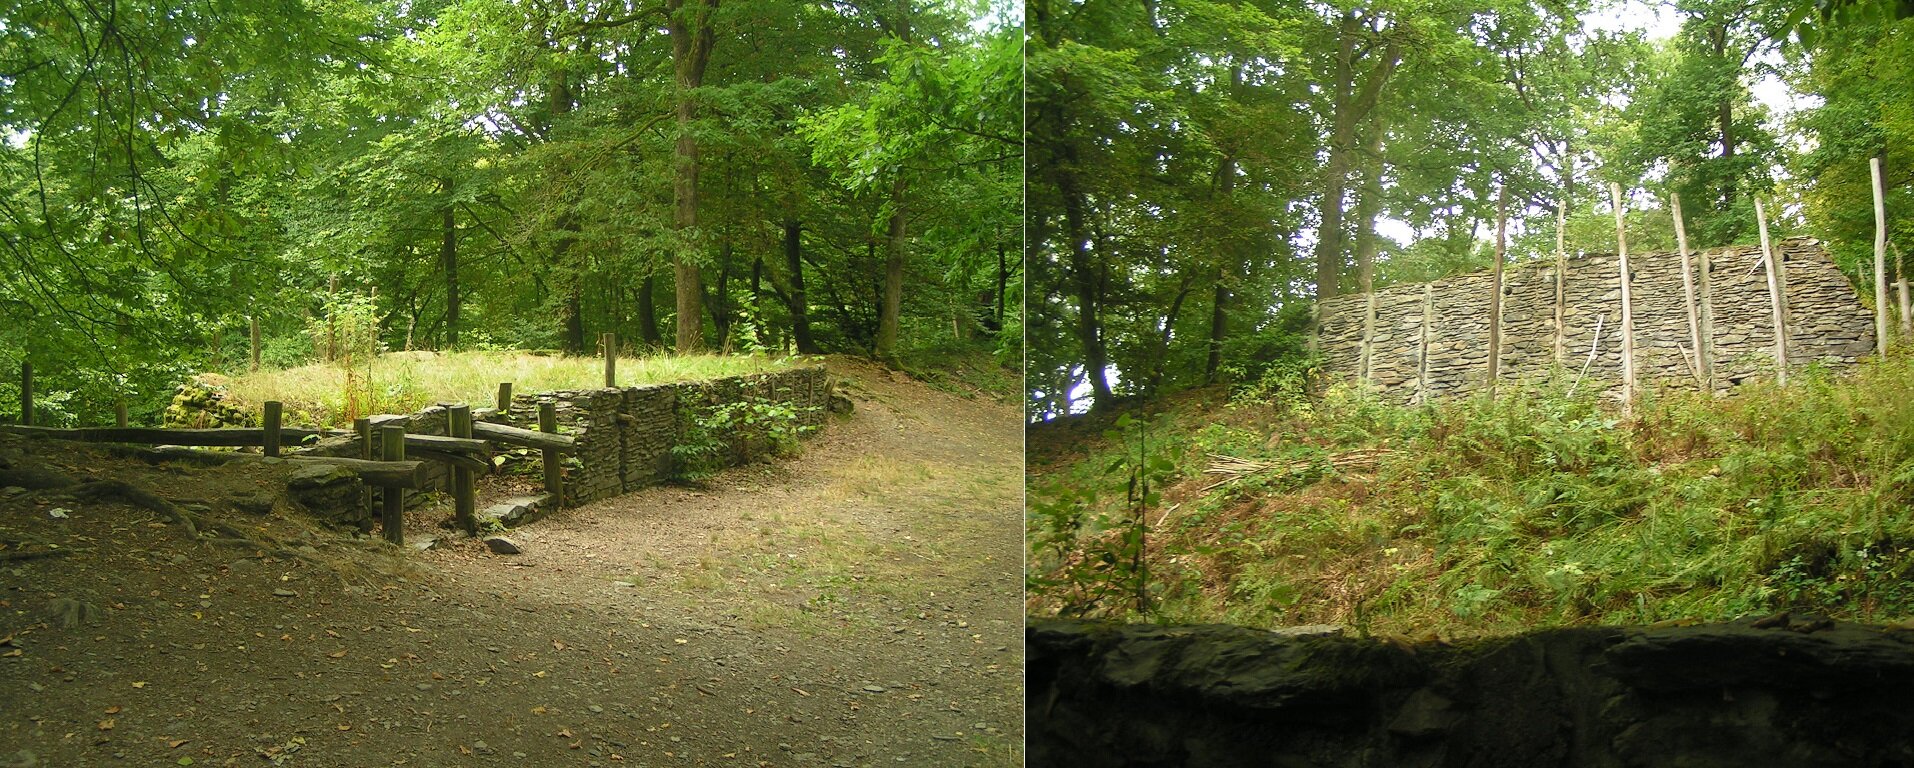 À gauche : les techniques de construction du rempart ; à droite : la muraille vue du dessous